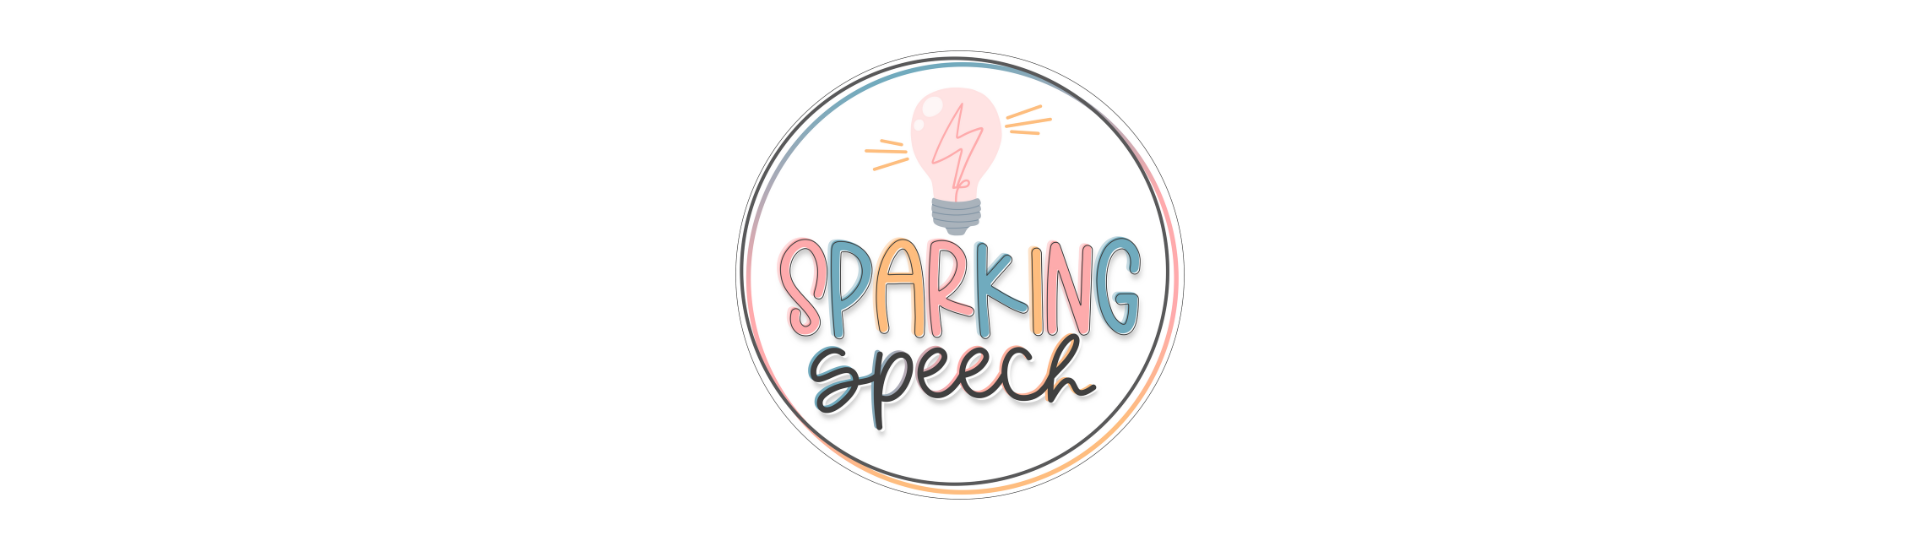 Sparking-Speech-Transparent.png